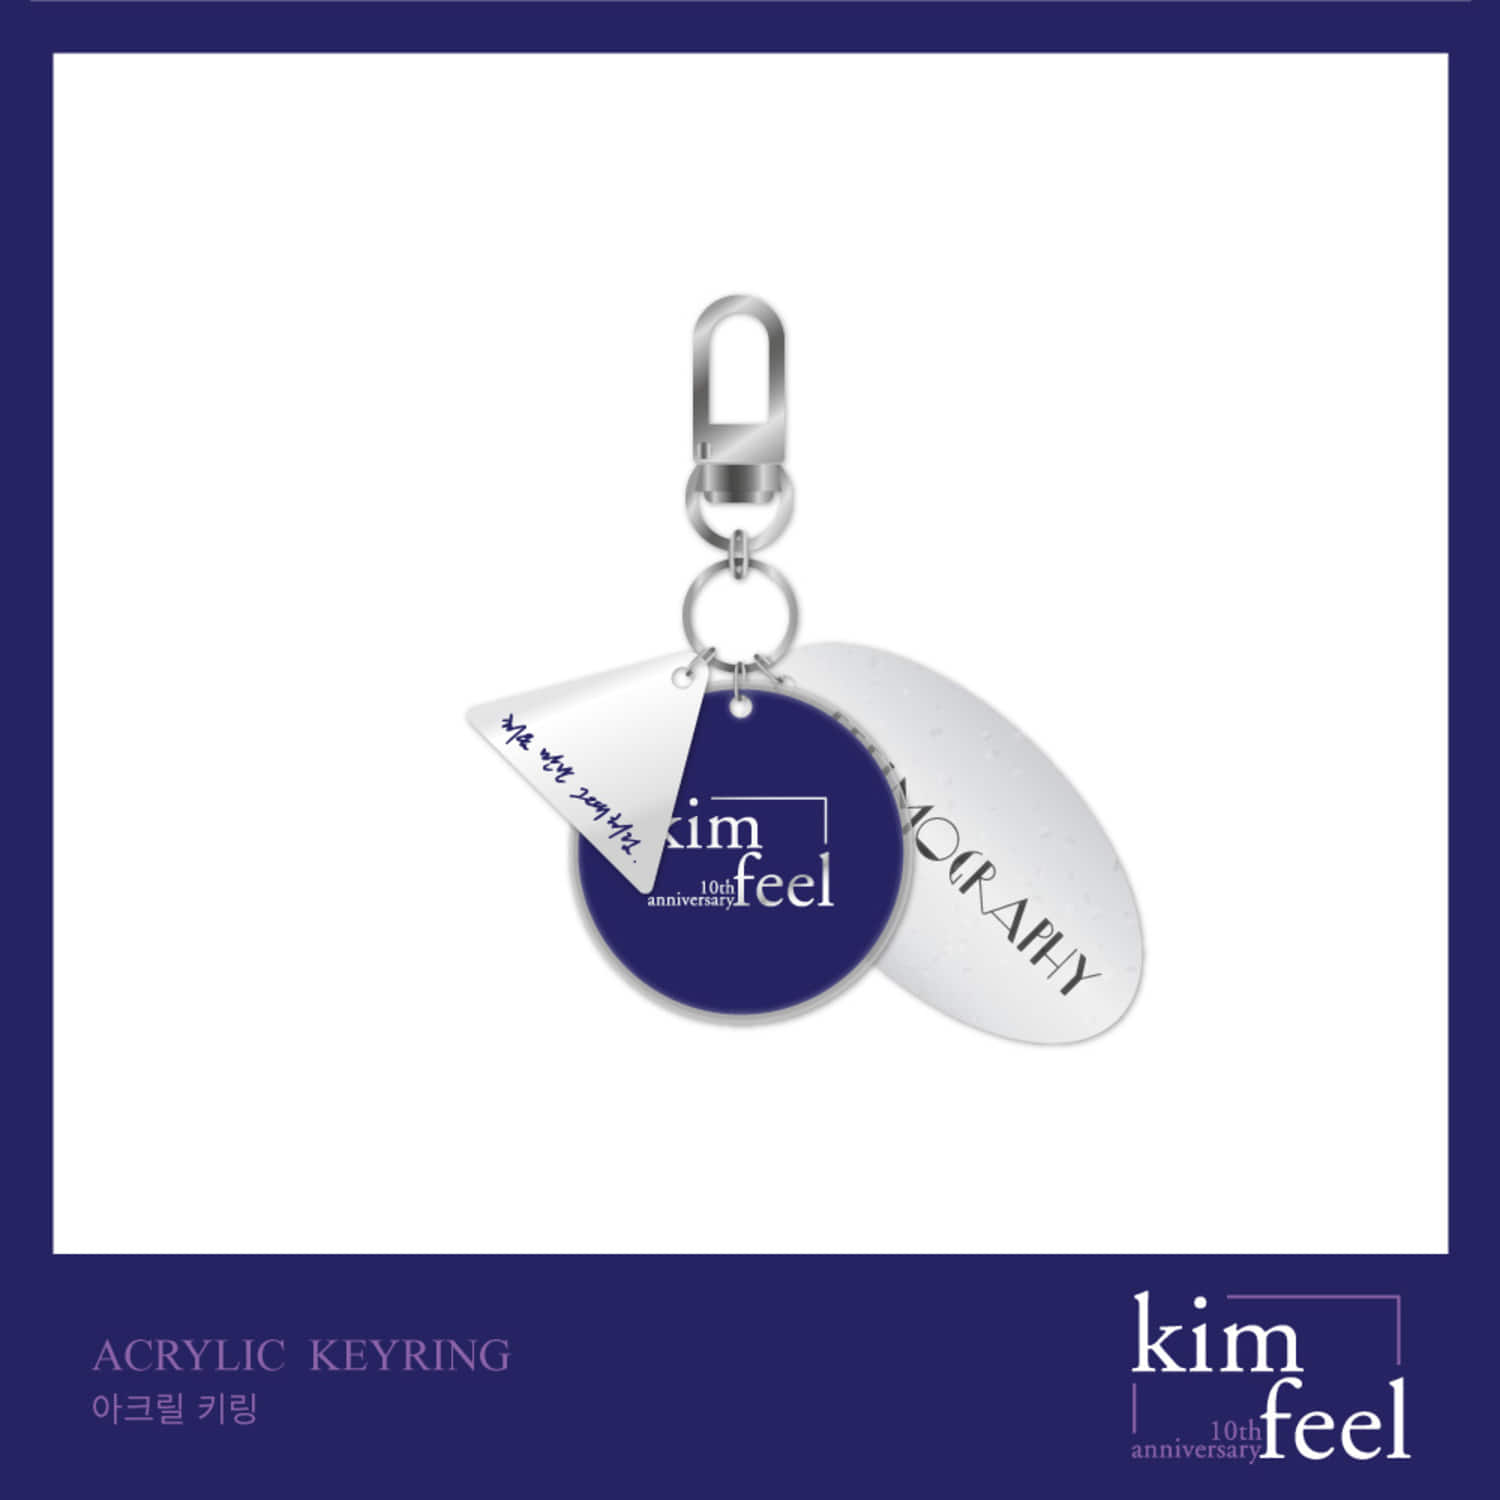 김필 (KIM FEEL) [10th anniversary] OFFICIAL GOODS - 아크릴 키링 ACRYLIC KEYRING